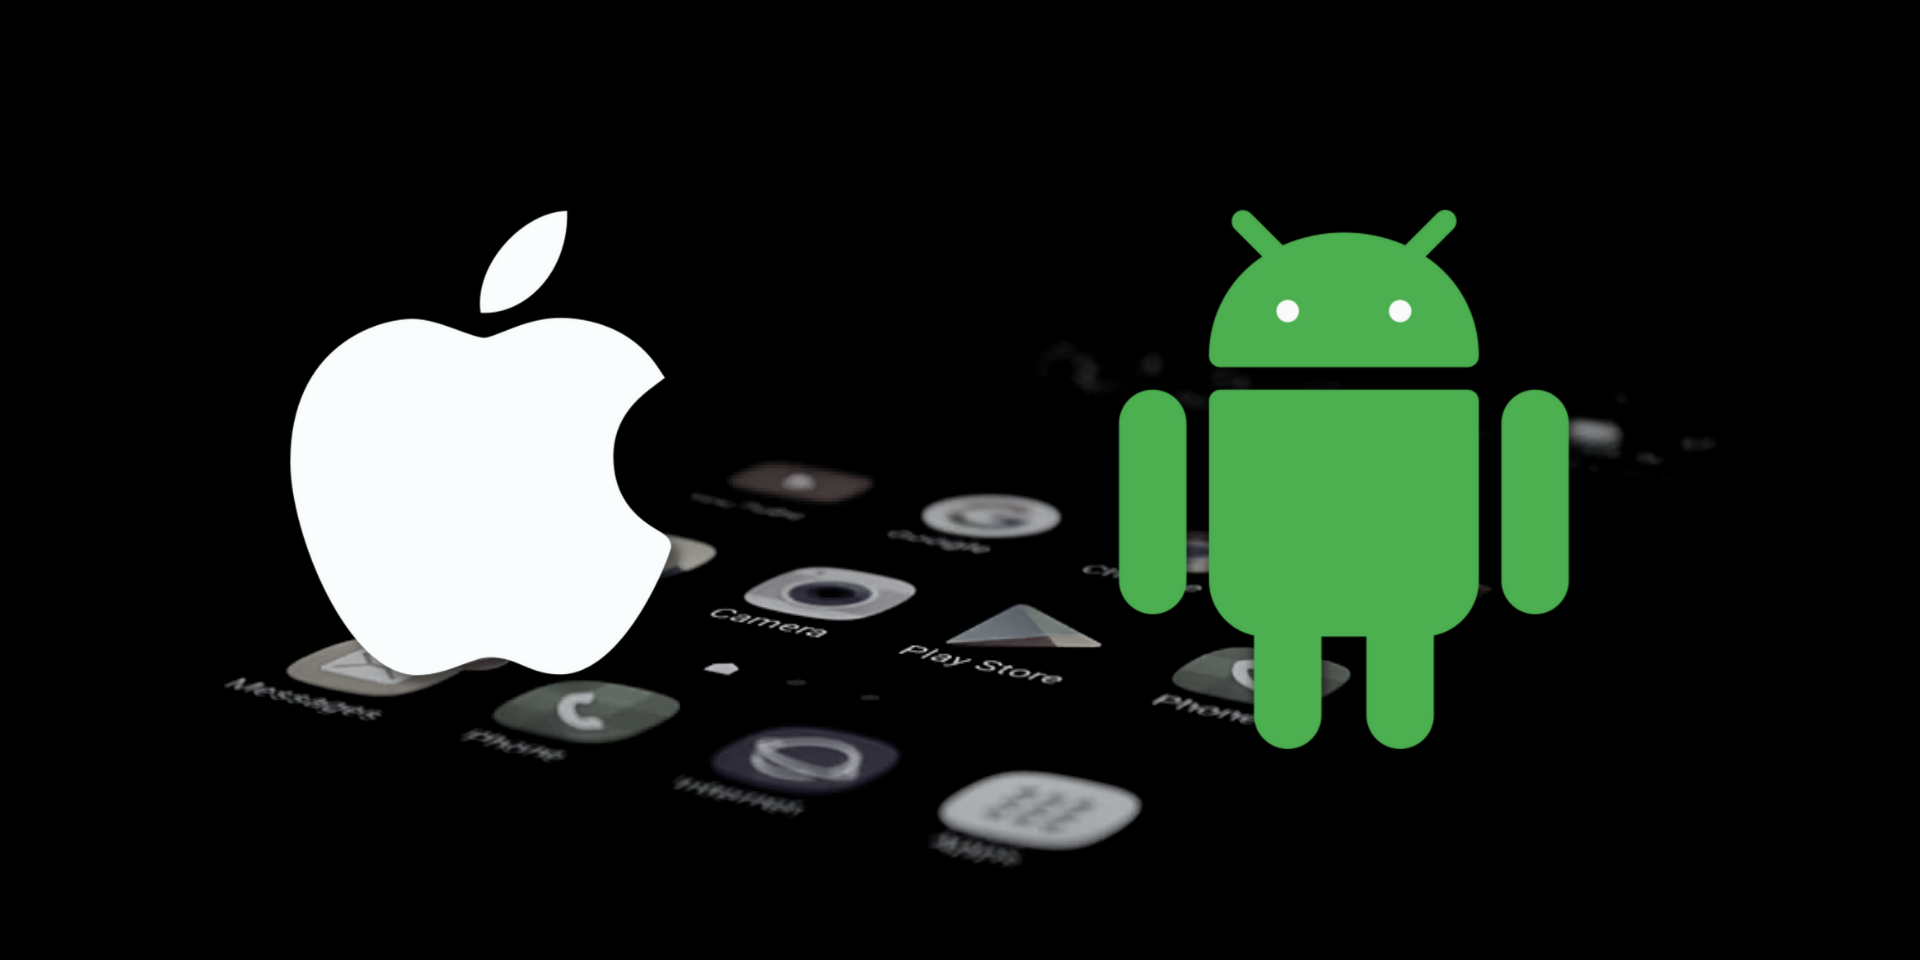 iOS vs Android : quel système est le plus sécurisé ?